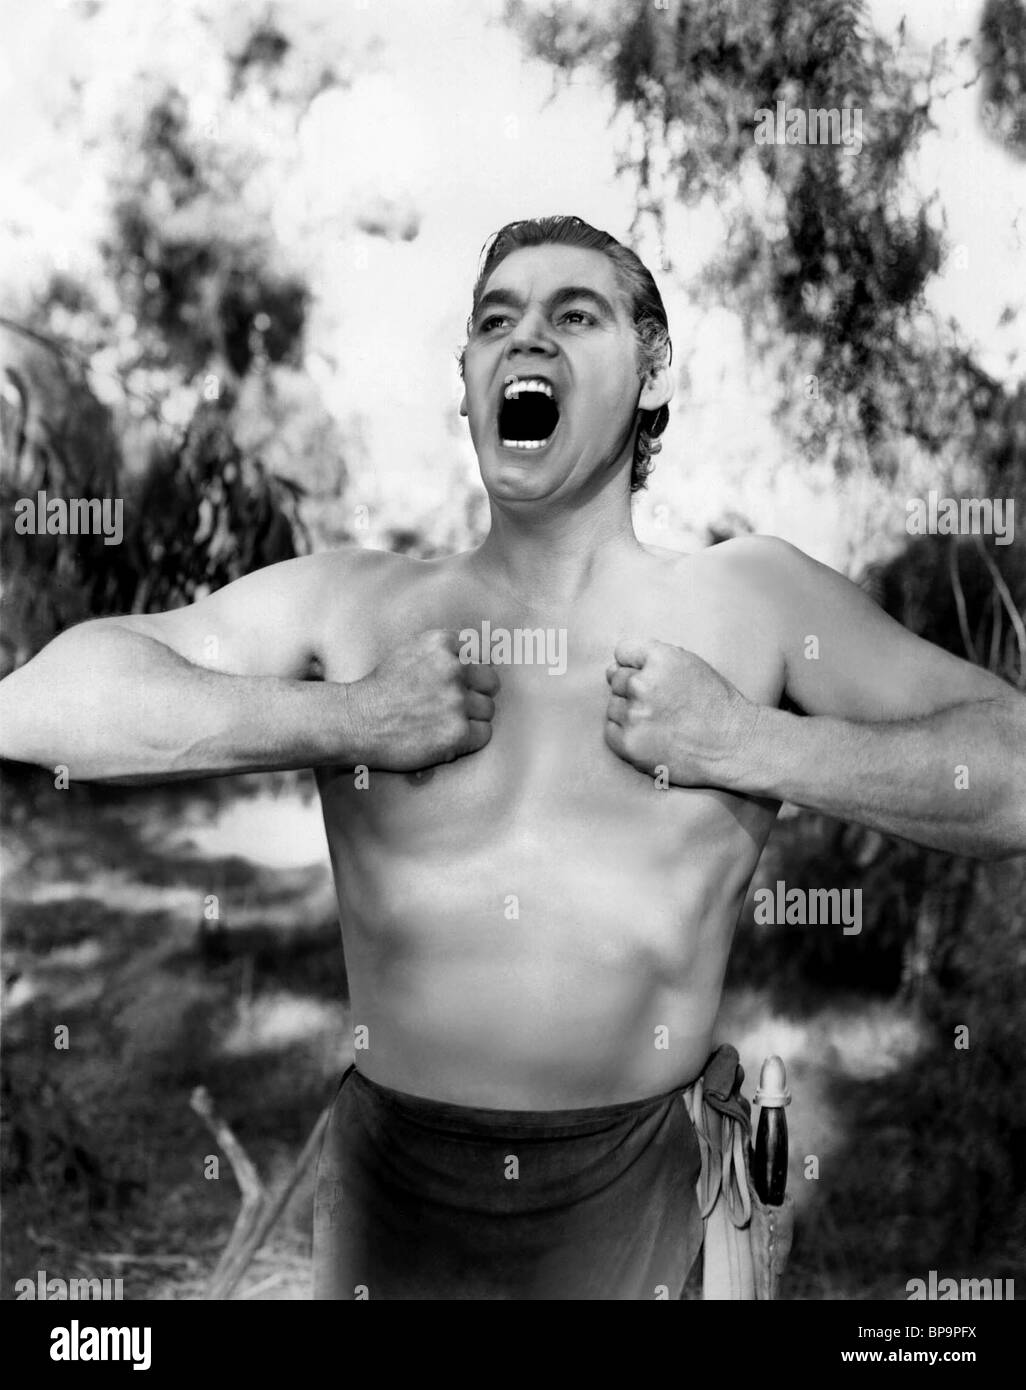 Tarzan trouve un fils 1939 johnny weissmuller Banque d'images noir et ...